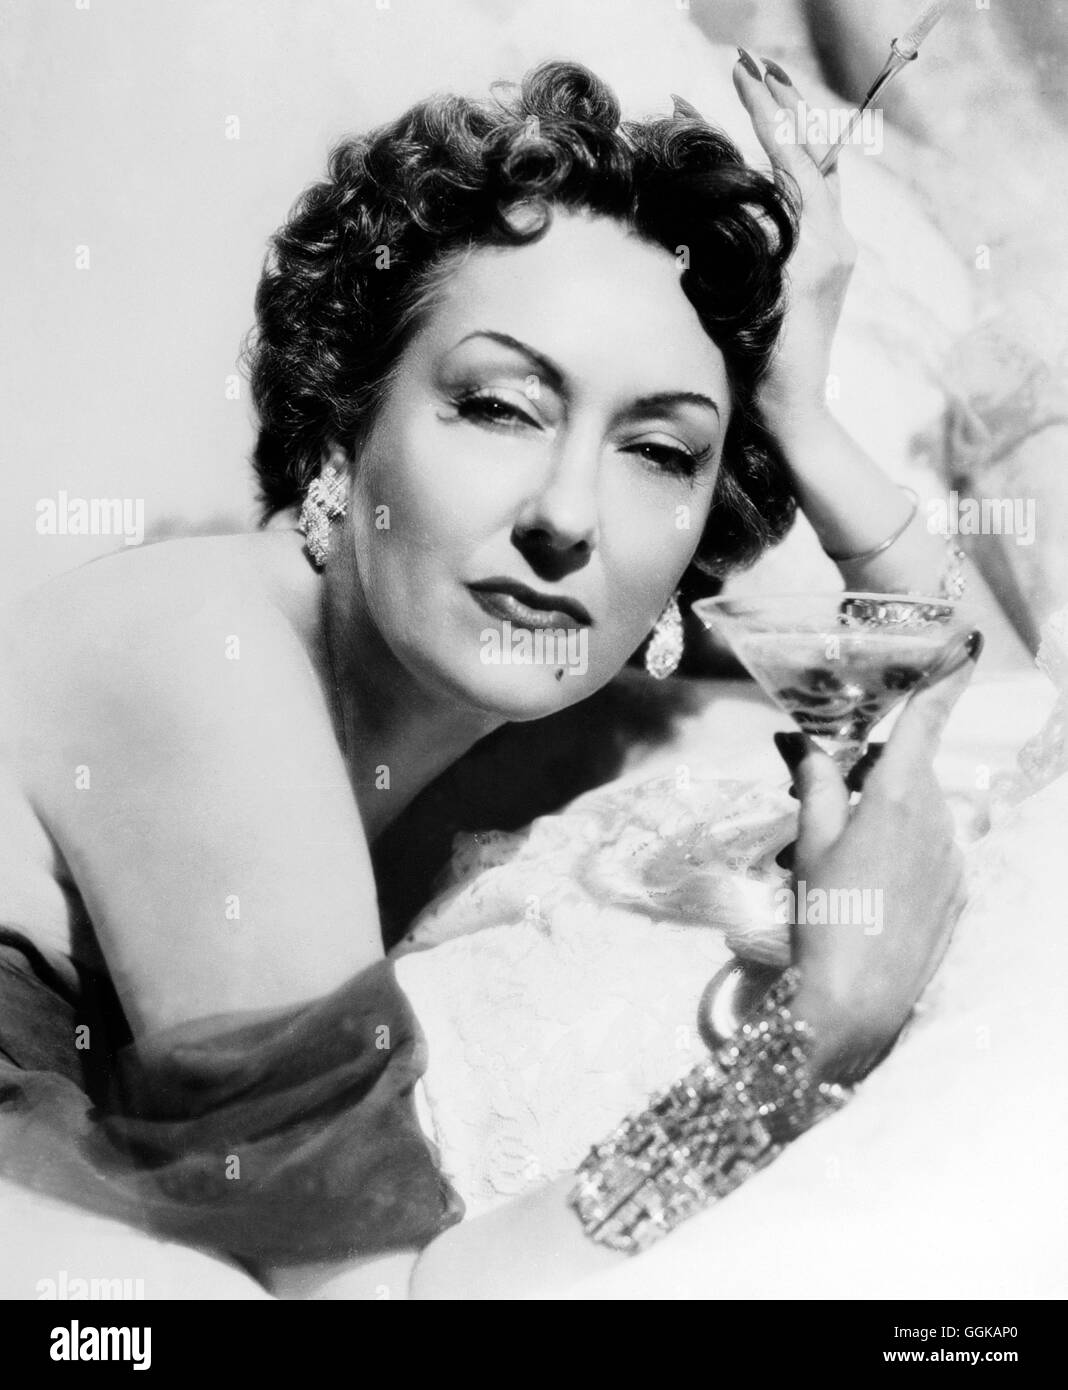 BOULEVARD DER DäMMERUNG / Sunset Boulevard USA 1950 / Billy Wilder GLORIA SWANSON (Norma Desmond) Regie: Billy Wilder aka. Sunset Boulevard Stock Photo